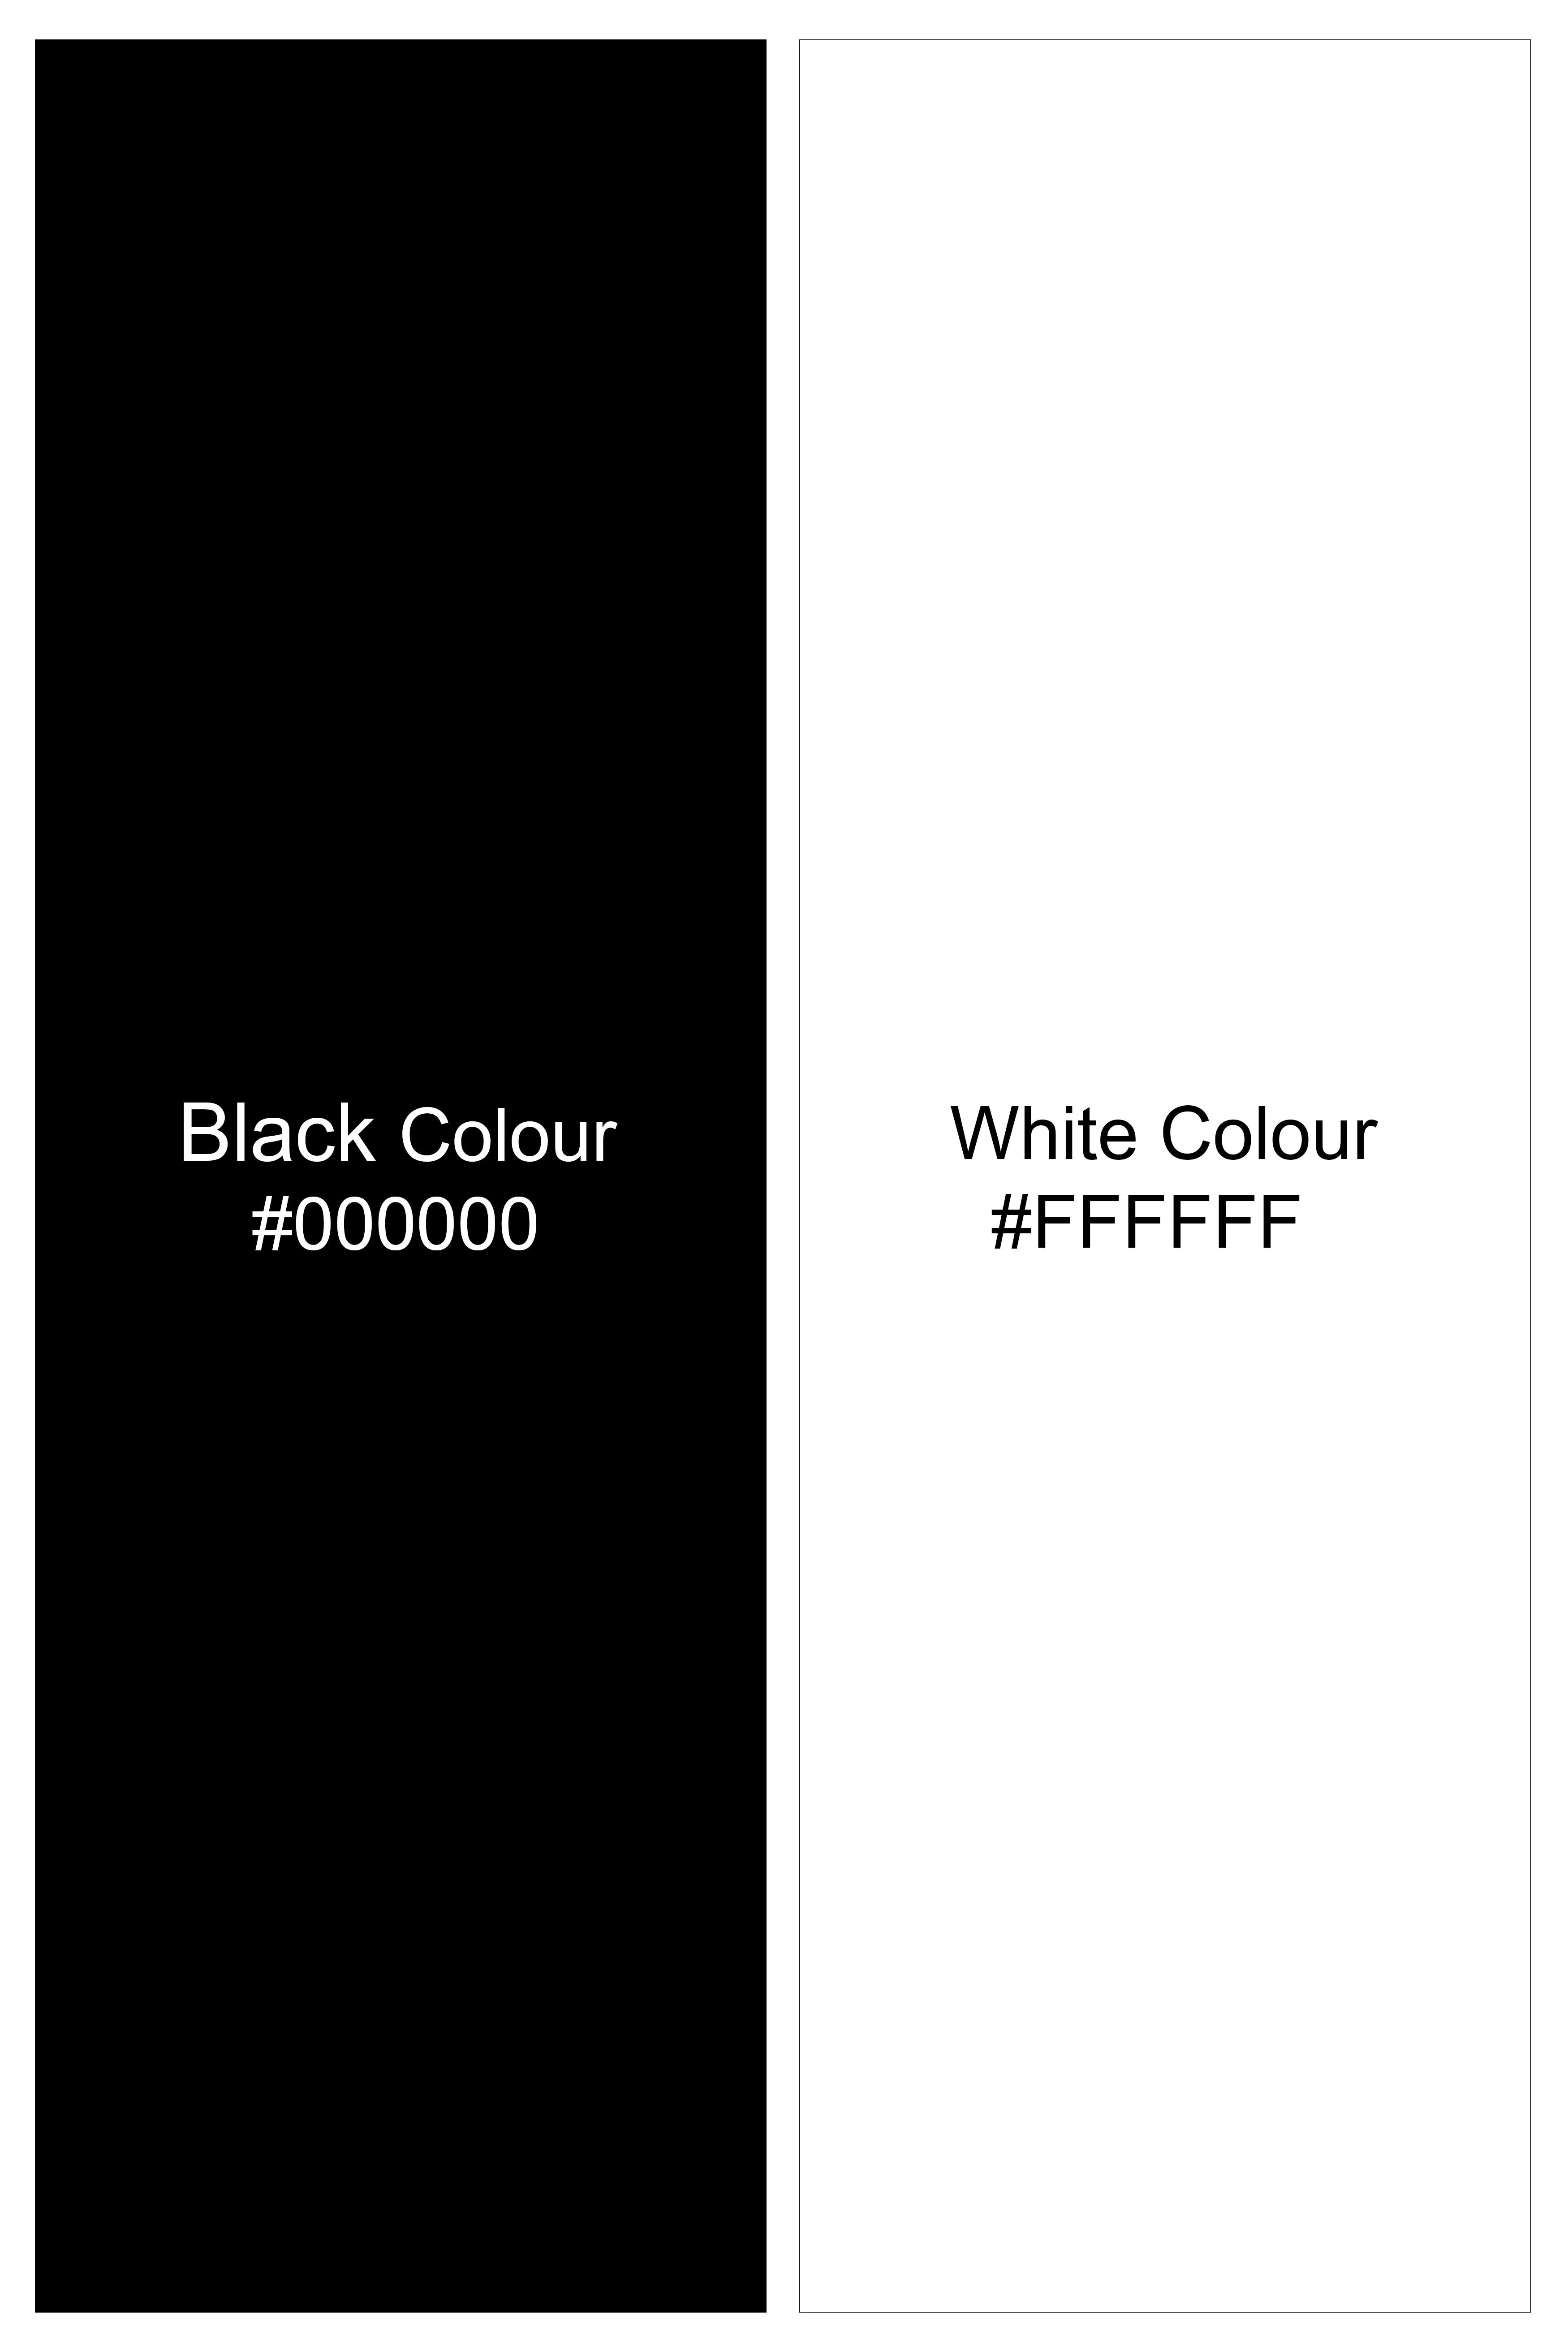 Jade Black with White Double Striped Super Soft Premium Cotton Shirt 5761-BLK-P120-38, 5761-BLK-P120-H-38, 5761-BLK-P120-39, 5761-BLK-P120-H-39, 5761-BLK-P120-40, 5761-BLK-P120-H-40, 5761-BLK-P120-42, 5761-BLK-P120-H-42, 5761-BLK-P120-44, 5761-BLK-P120-H-44, 5761-BLK-P120-46, 5761-BLK-P120-H-46, 5761-BLK-P120-48, 5761-BLK-P120-H-48, 5761-BLK-P120-50, 5761-BLK-P120-H-50, 5761-BLK-P120-52, 5761-BLK-P120-H-52